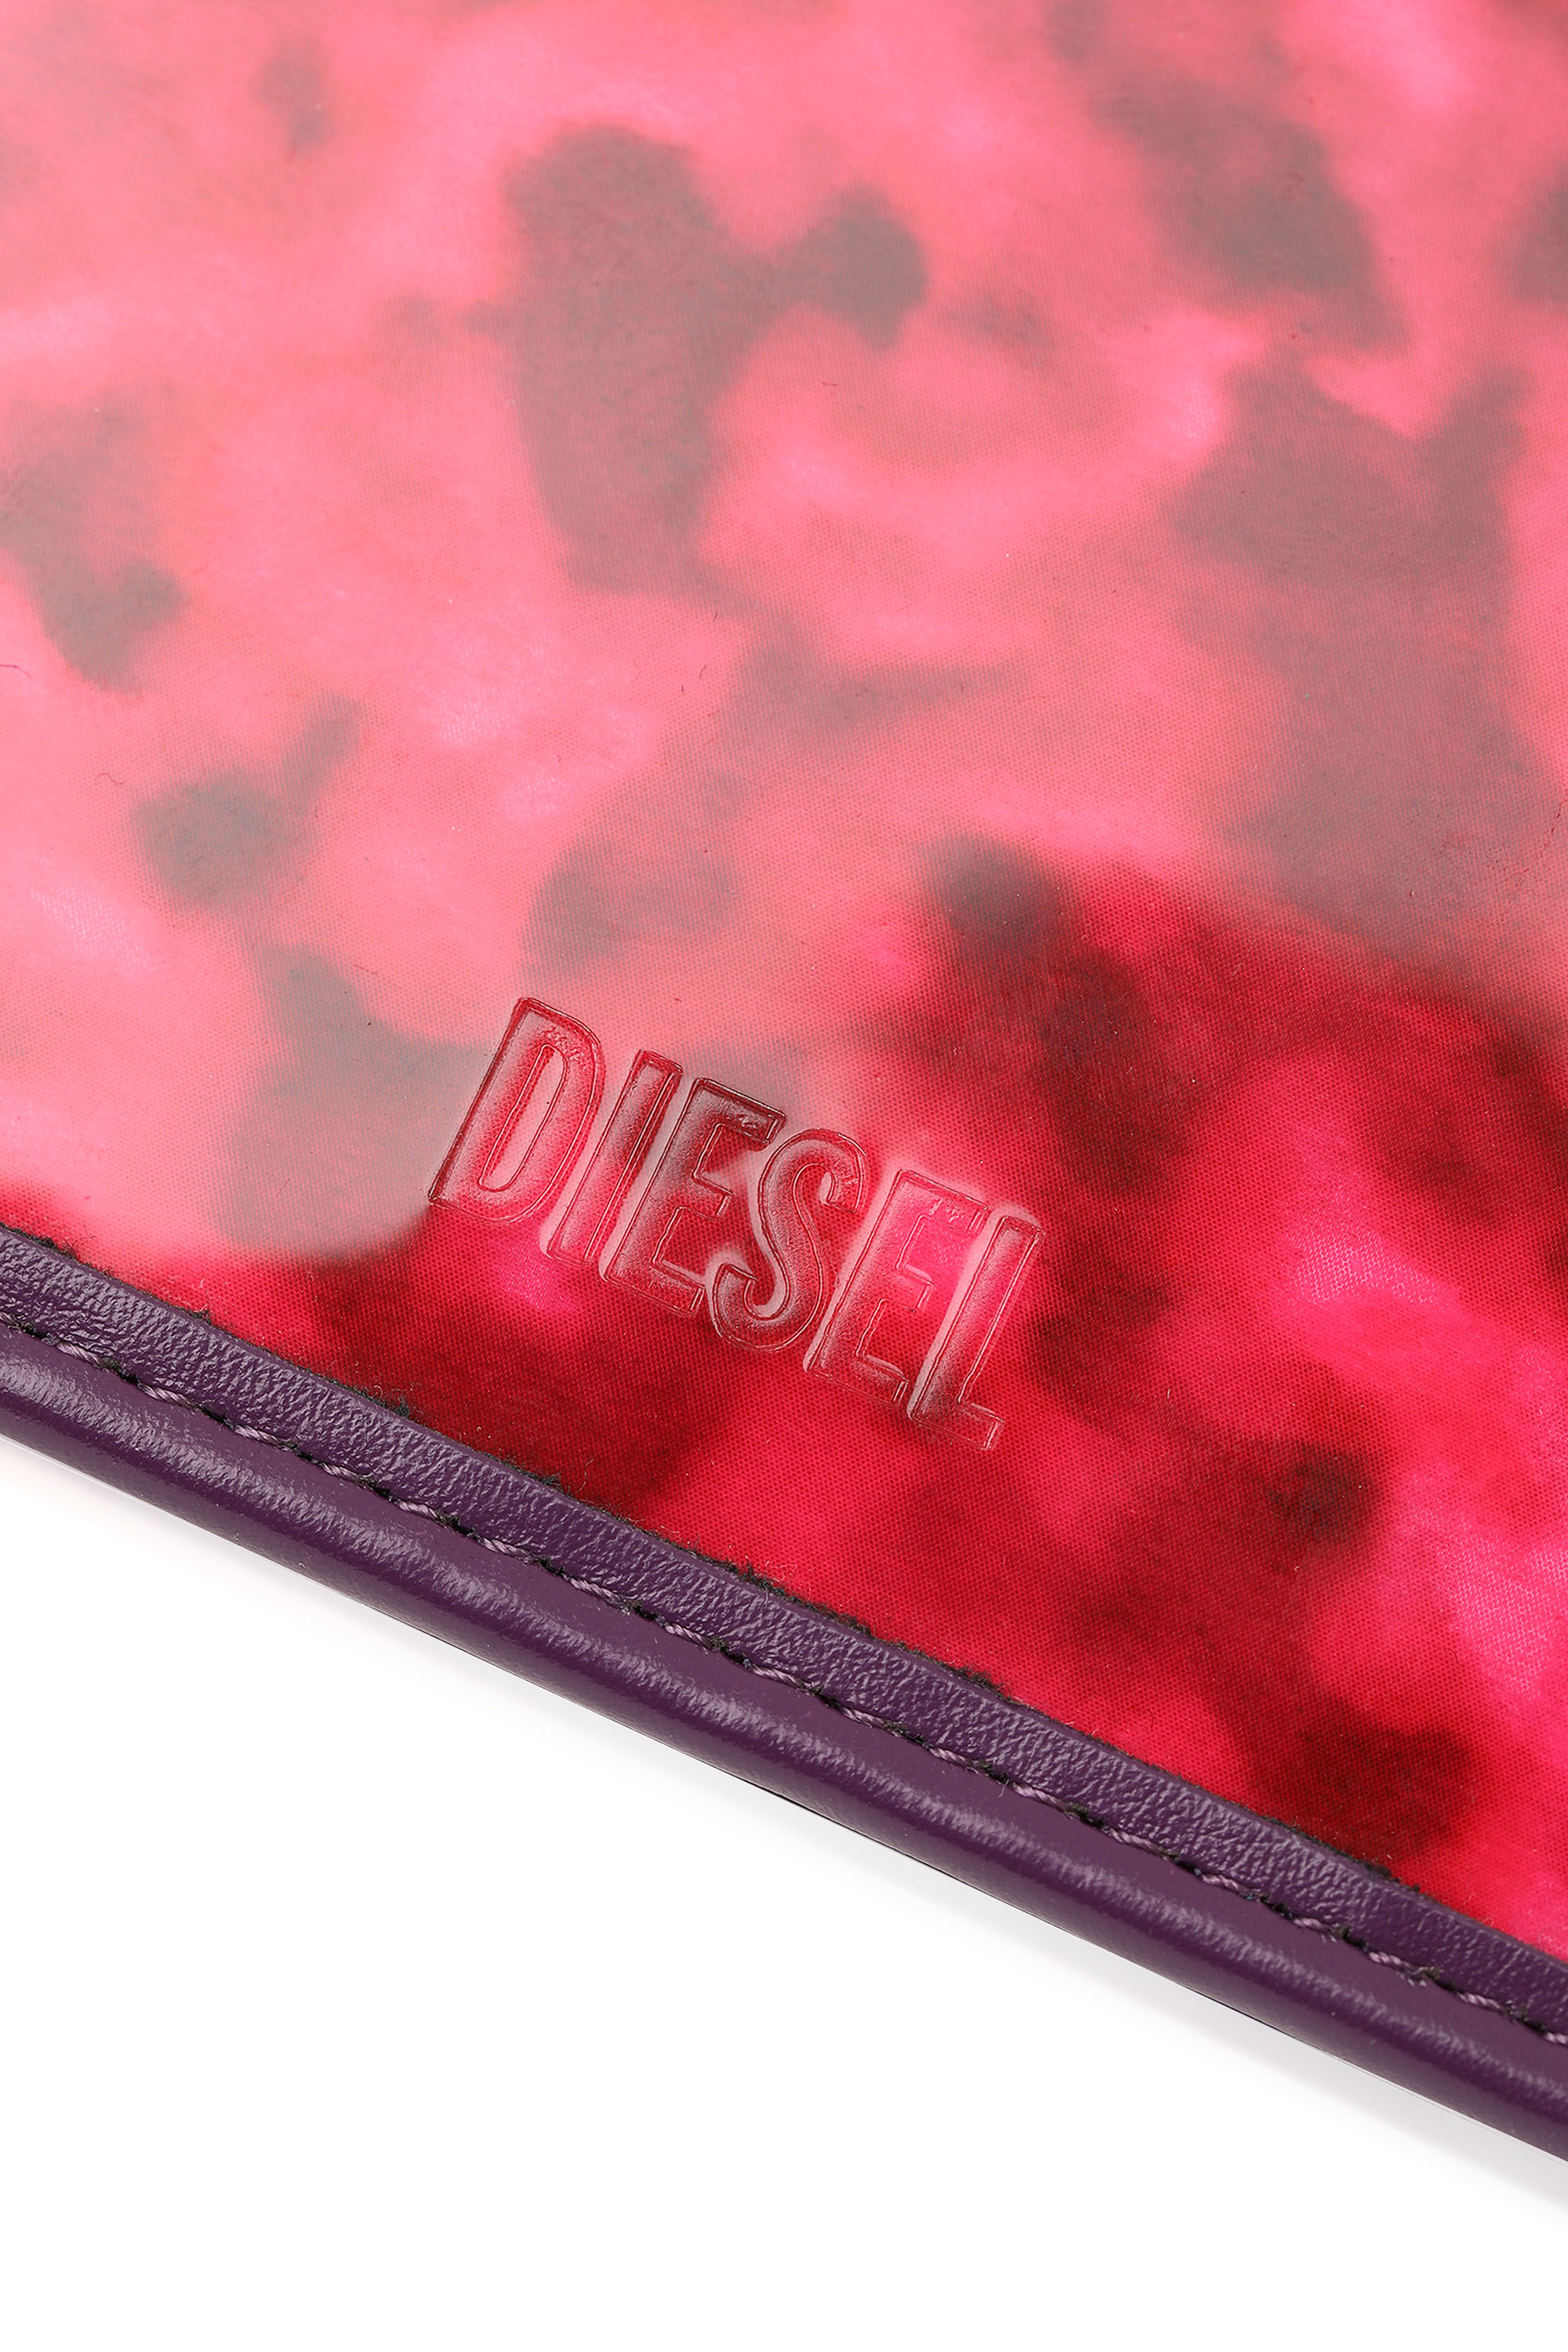 Diesel - STEA, Hot pink - Image 4